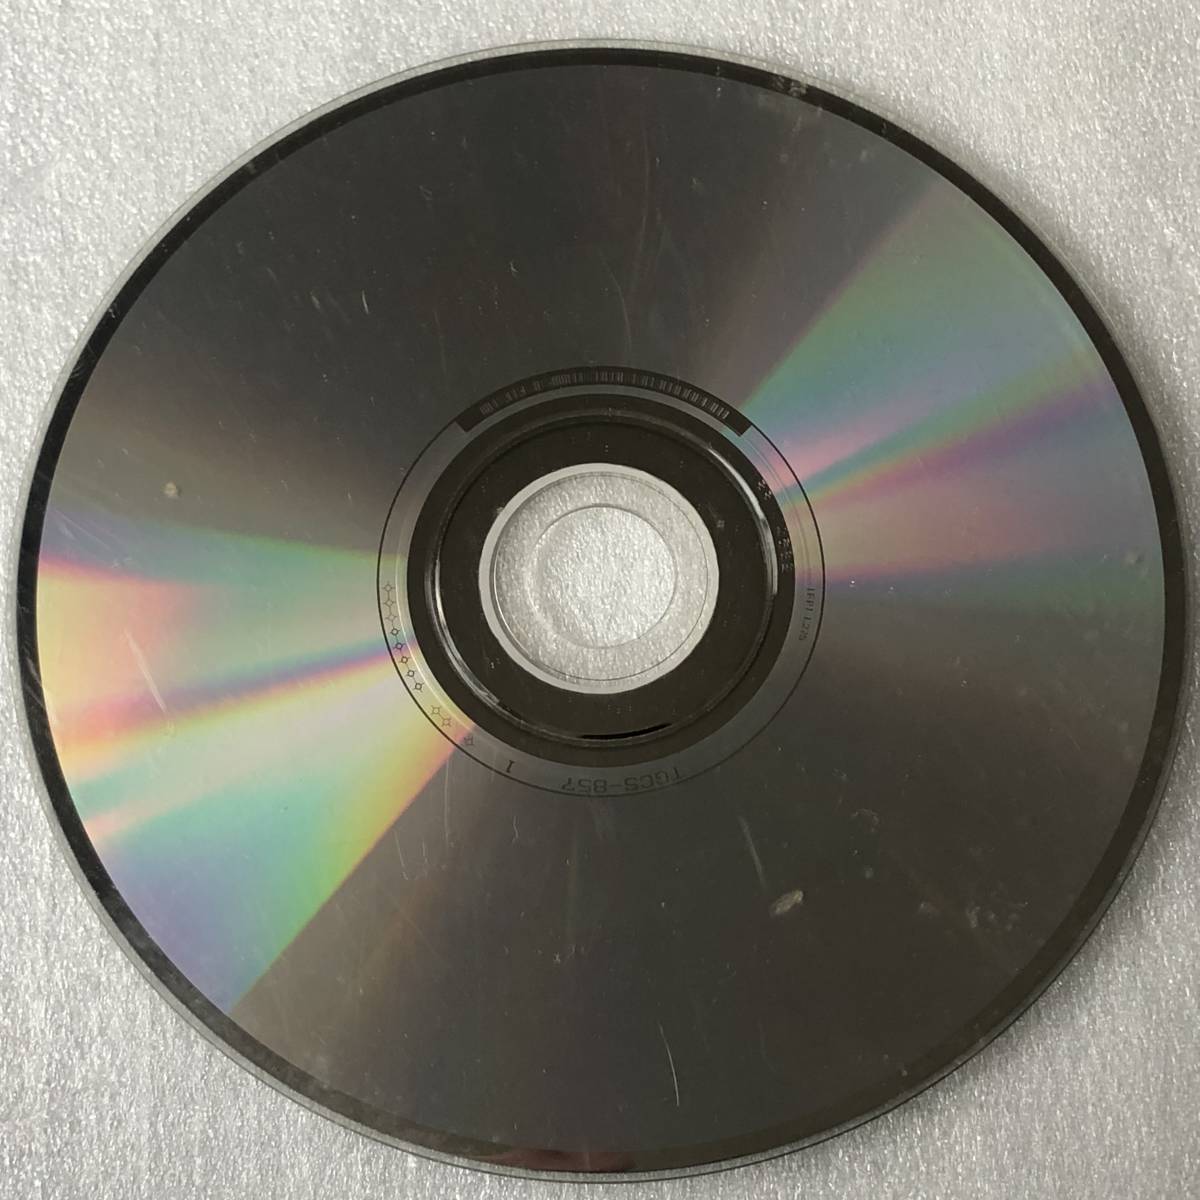 特価CD 管理番号0474_このような傷だらけの品は除外しています。